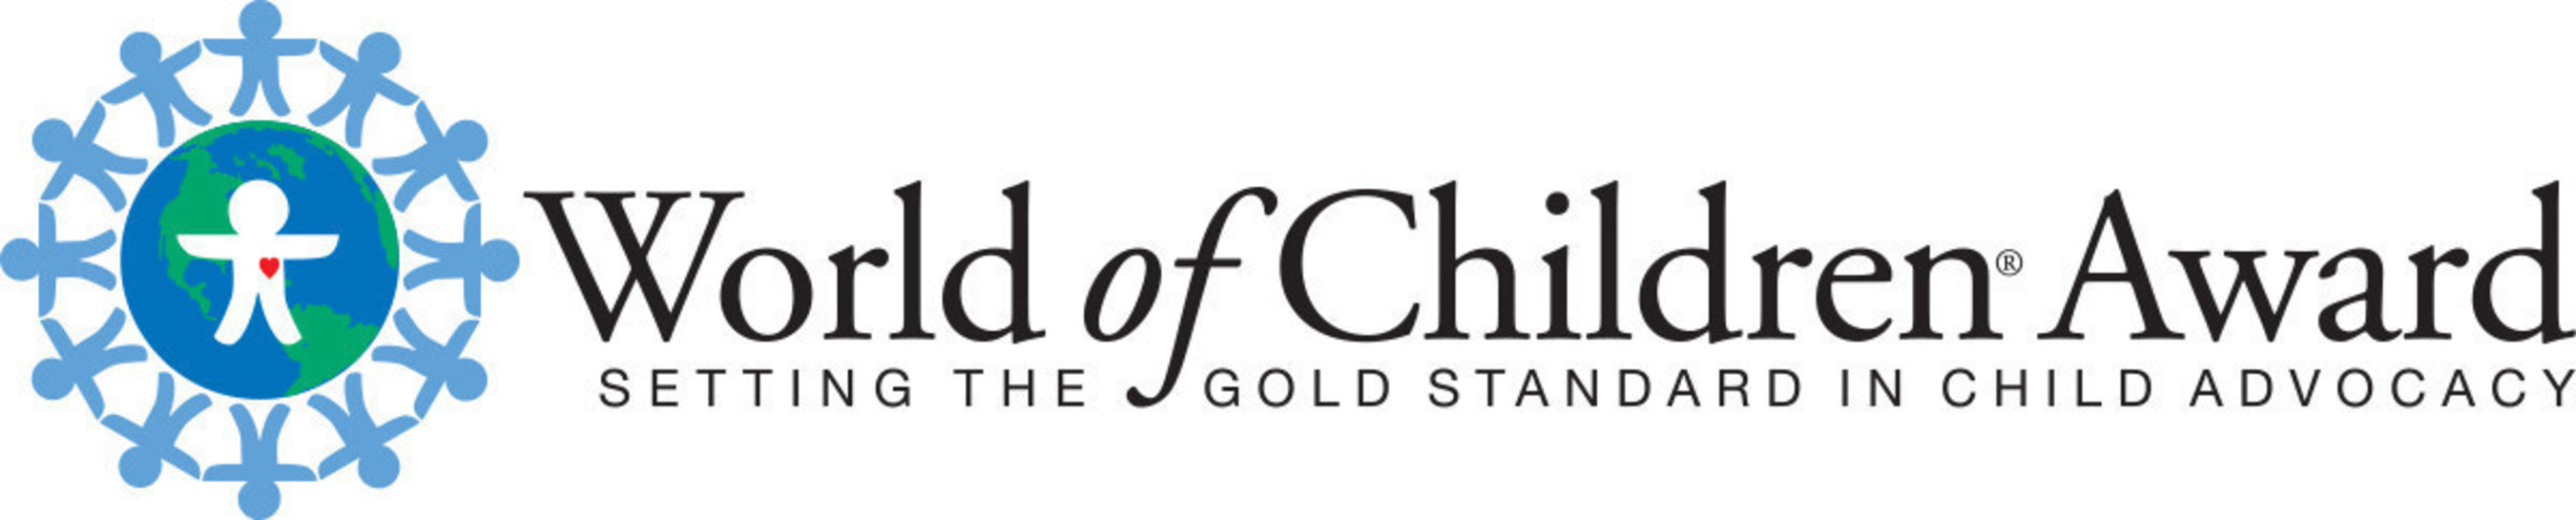 World of Children Award Logo